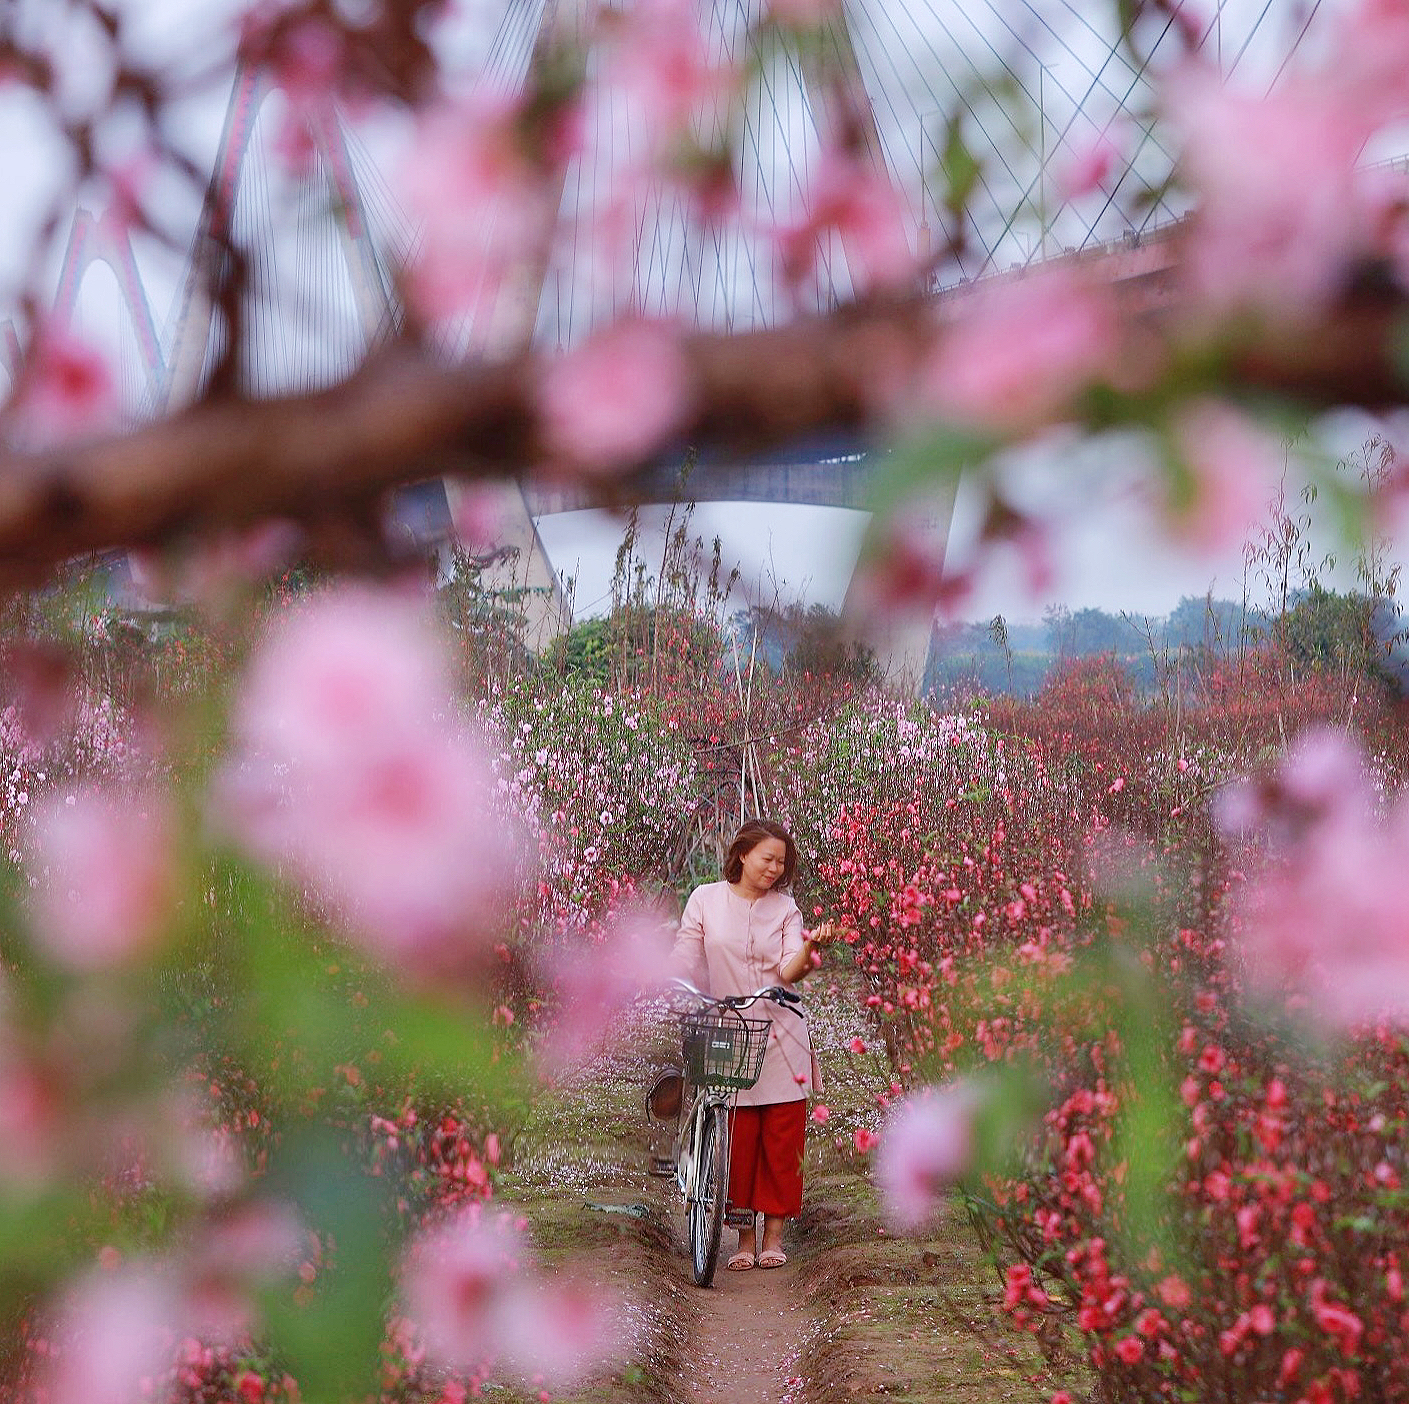 Người phụ nữ gốc Hà Nội kể lại ký ức tuốt lá, khiêng cây, tiết lộ góc chụp ảnh hiếm với vườn đào Nhật Tân - Ảnh 2.